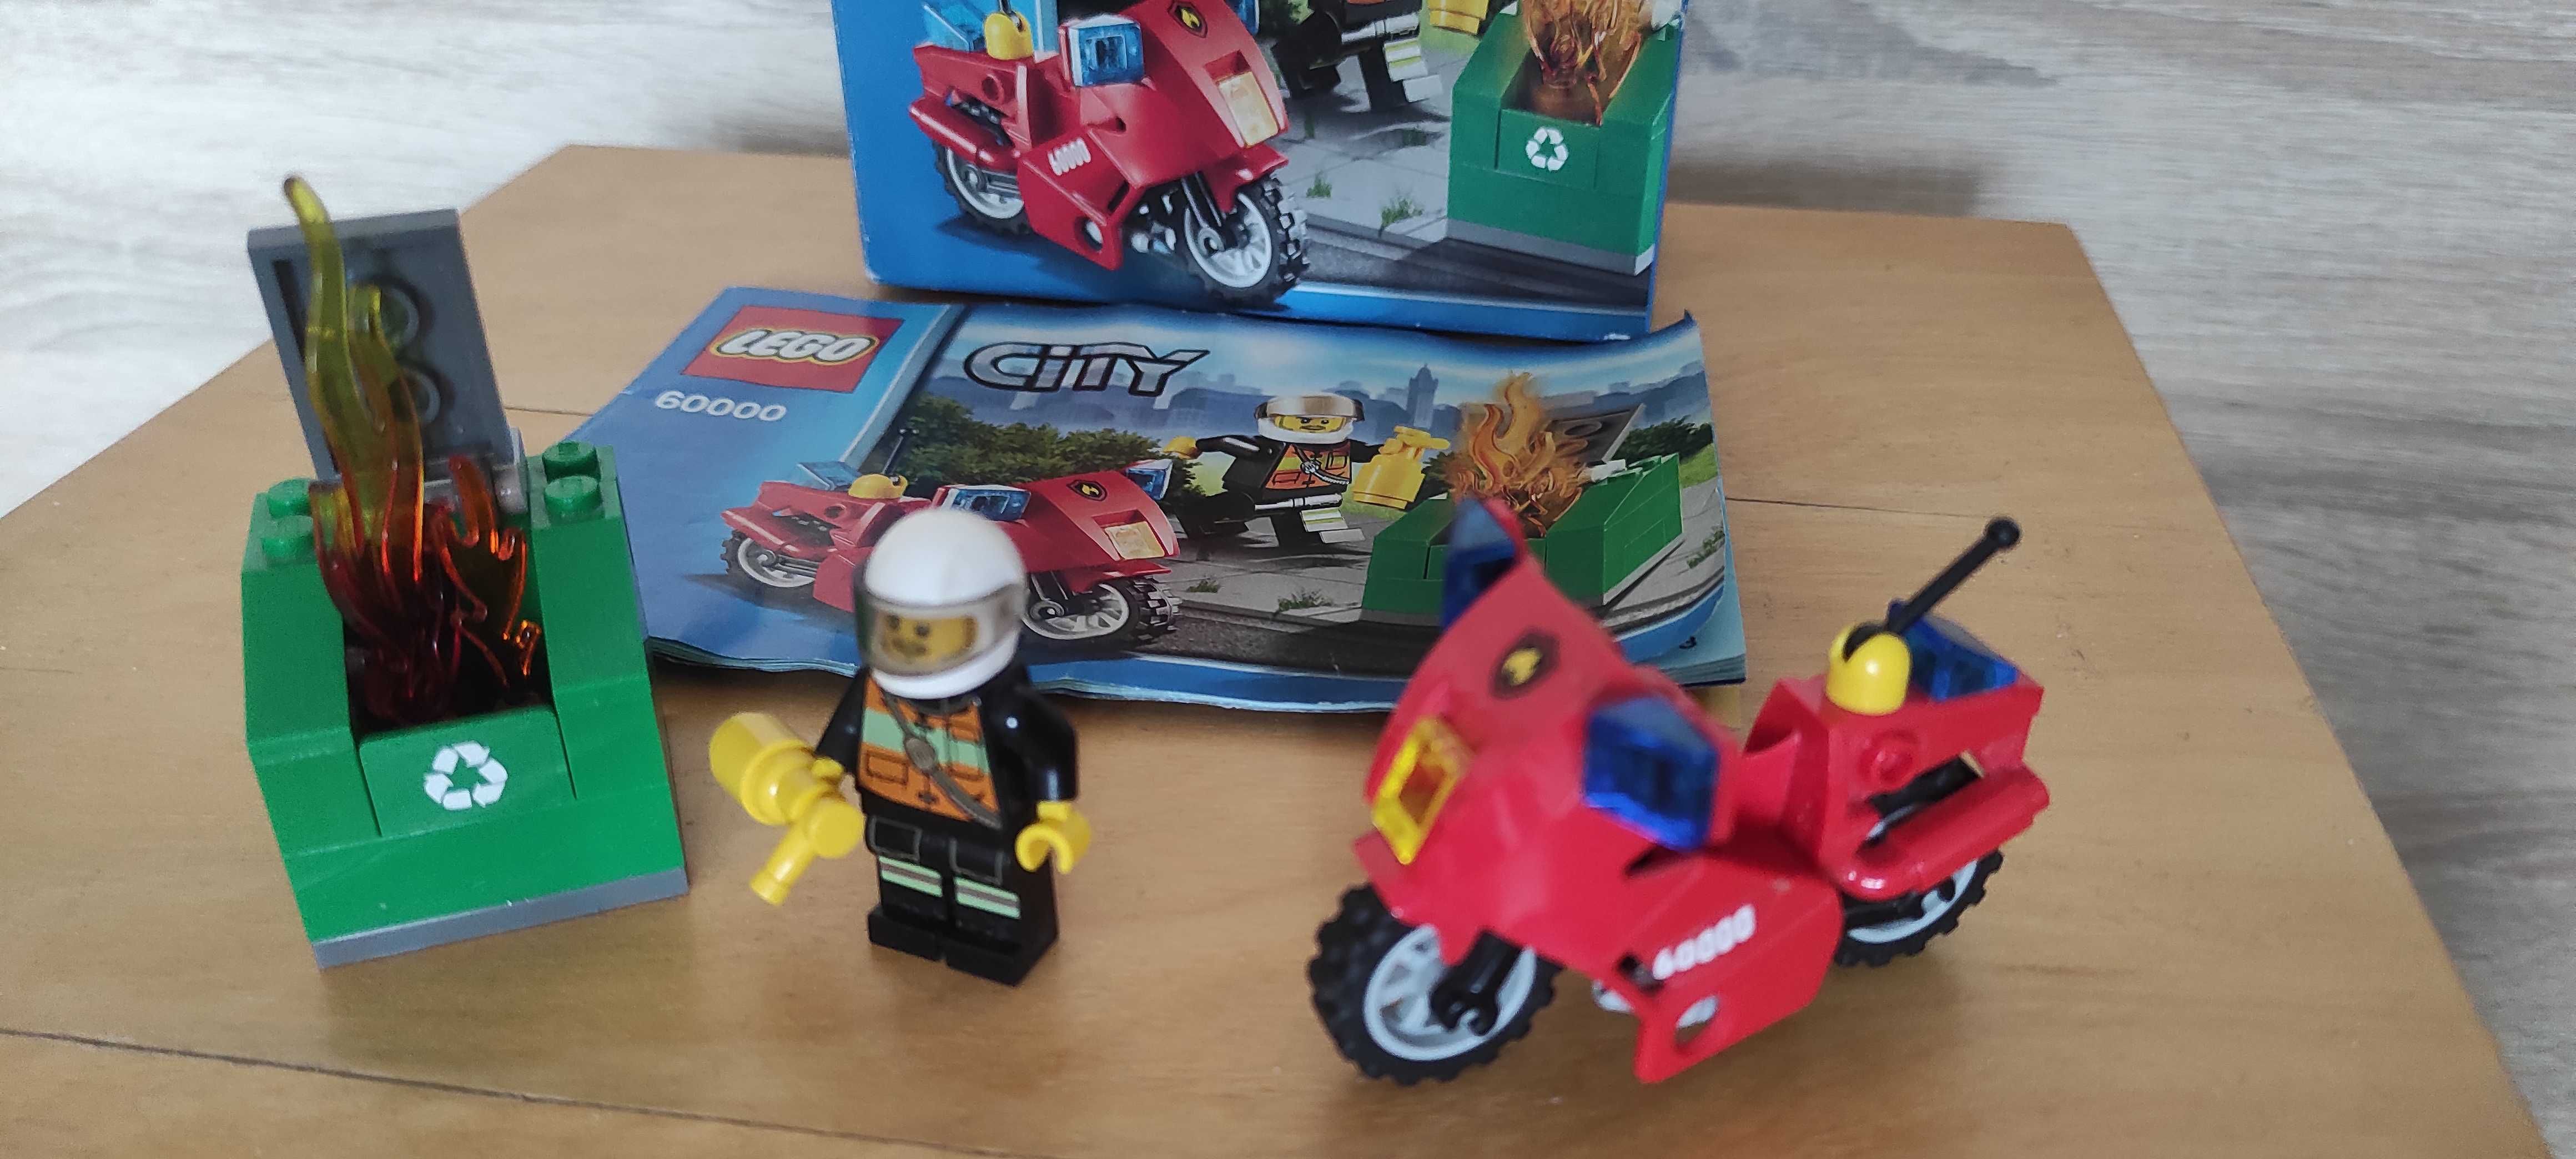 Lego 60000 City strażak zestaw instrukcja pudełko komplet